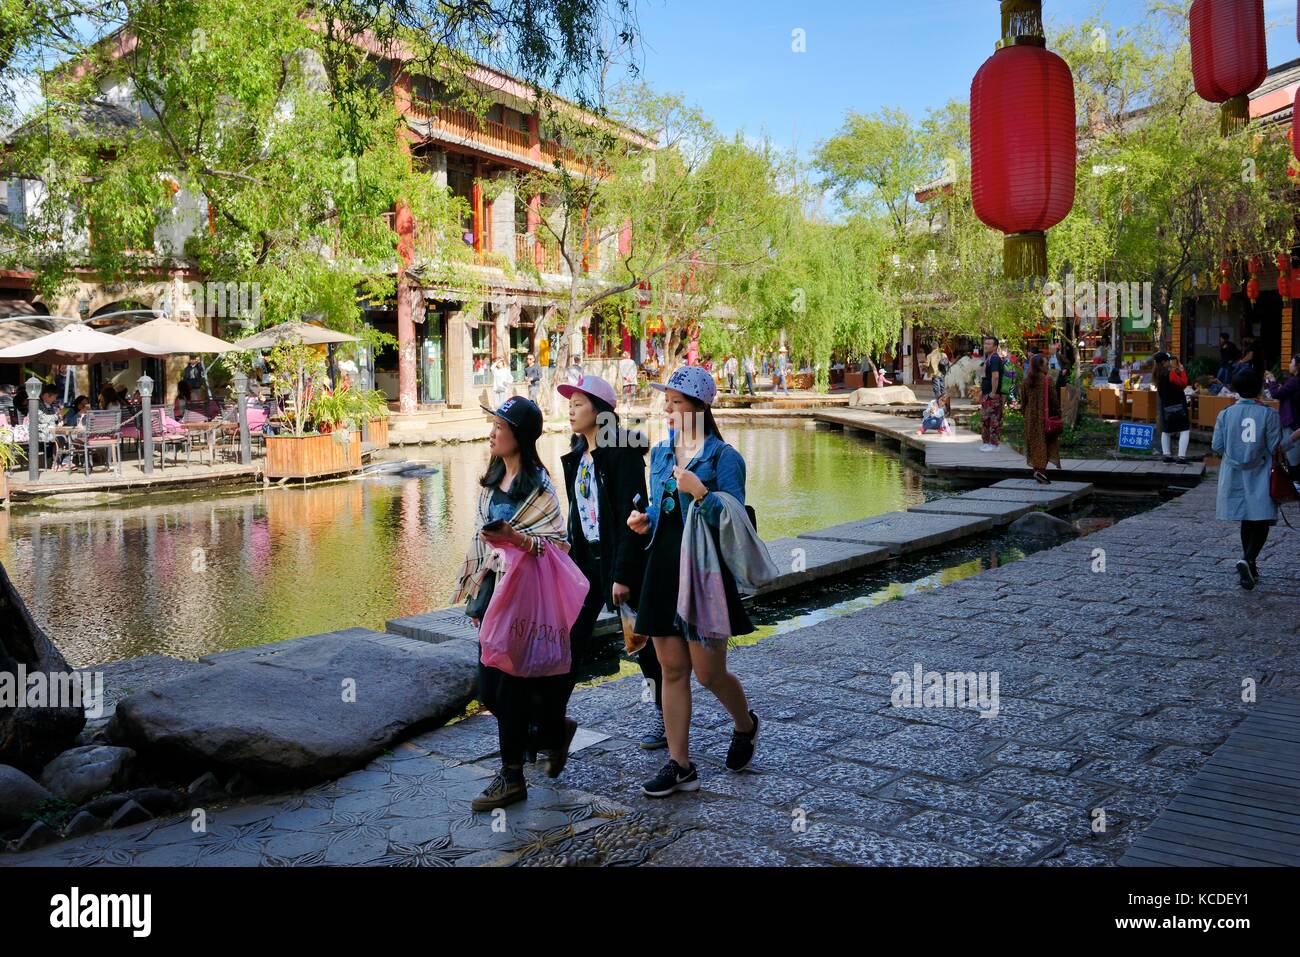 La ciudad vieja de Shuhe, sitio del patrimonio mundial, en la provincia de Yunnan, China. étnico Naxi pueblo antiguo sitio en Lijiang. Salones de té y tiendas de recuerdos street scene Foto de stock